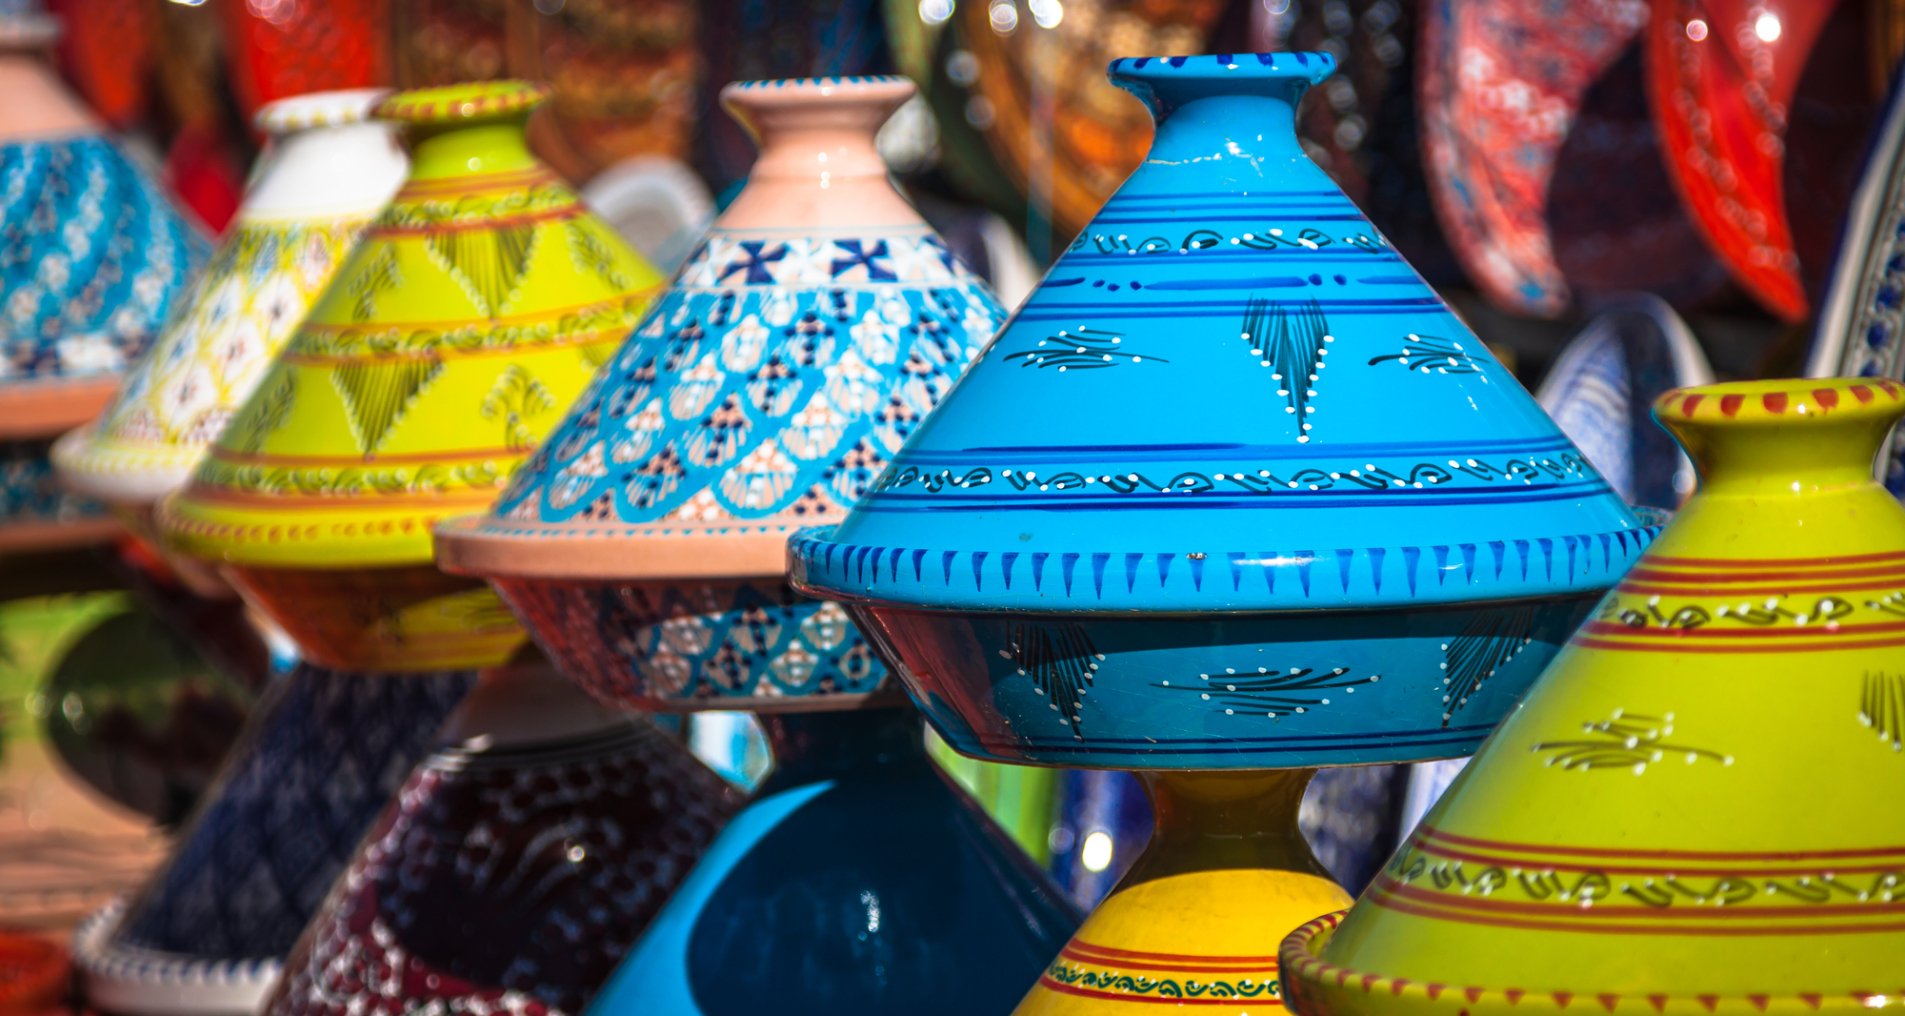 тажини на марокканському ринку